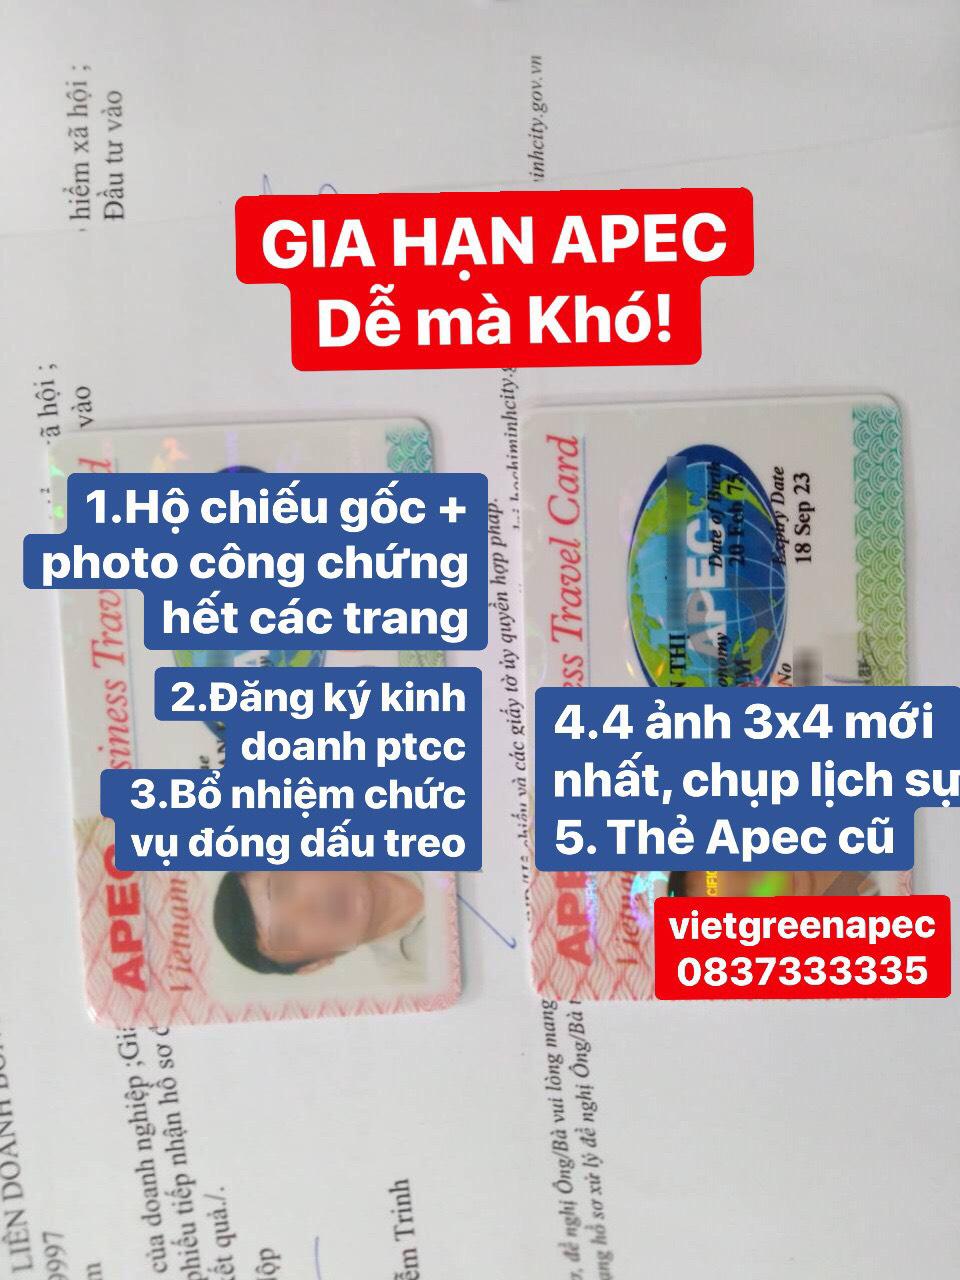 Dịch vụ xin cấp thẻ APEC tại Đắk Lak uy tín 2021